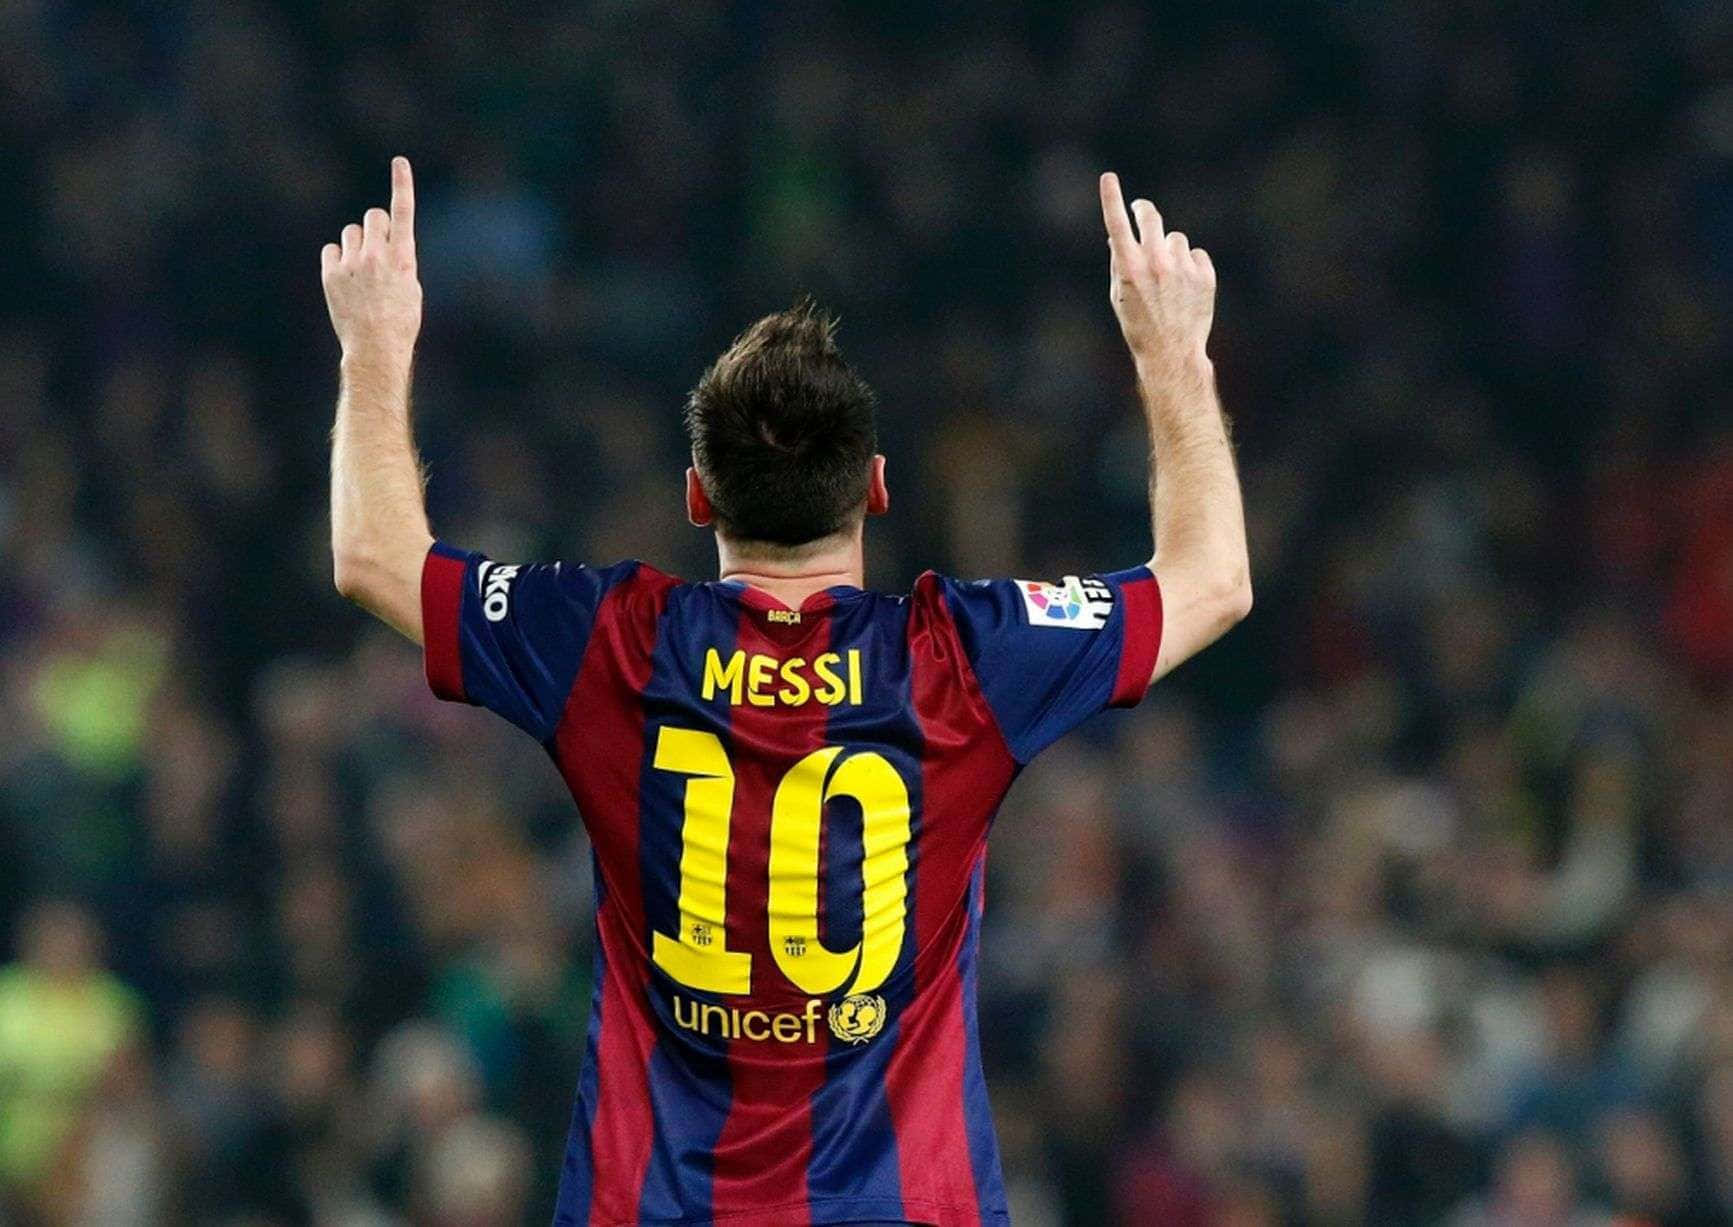 Lionel Messi - A Soccer Icon